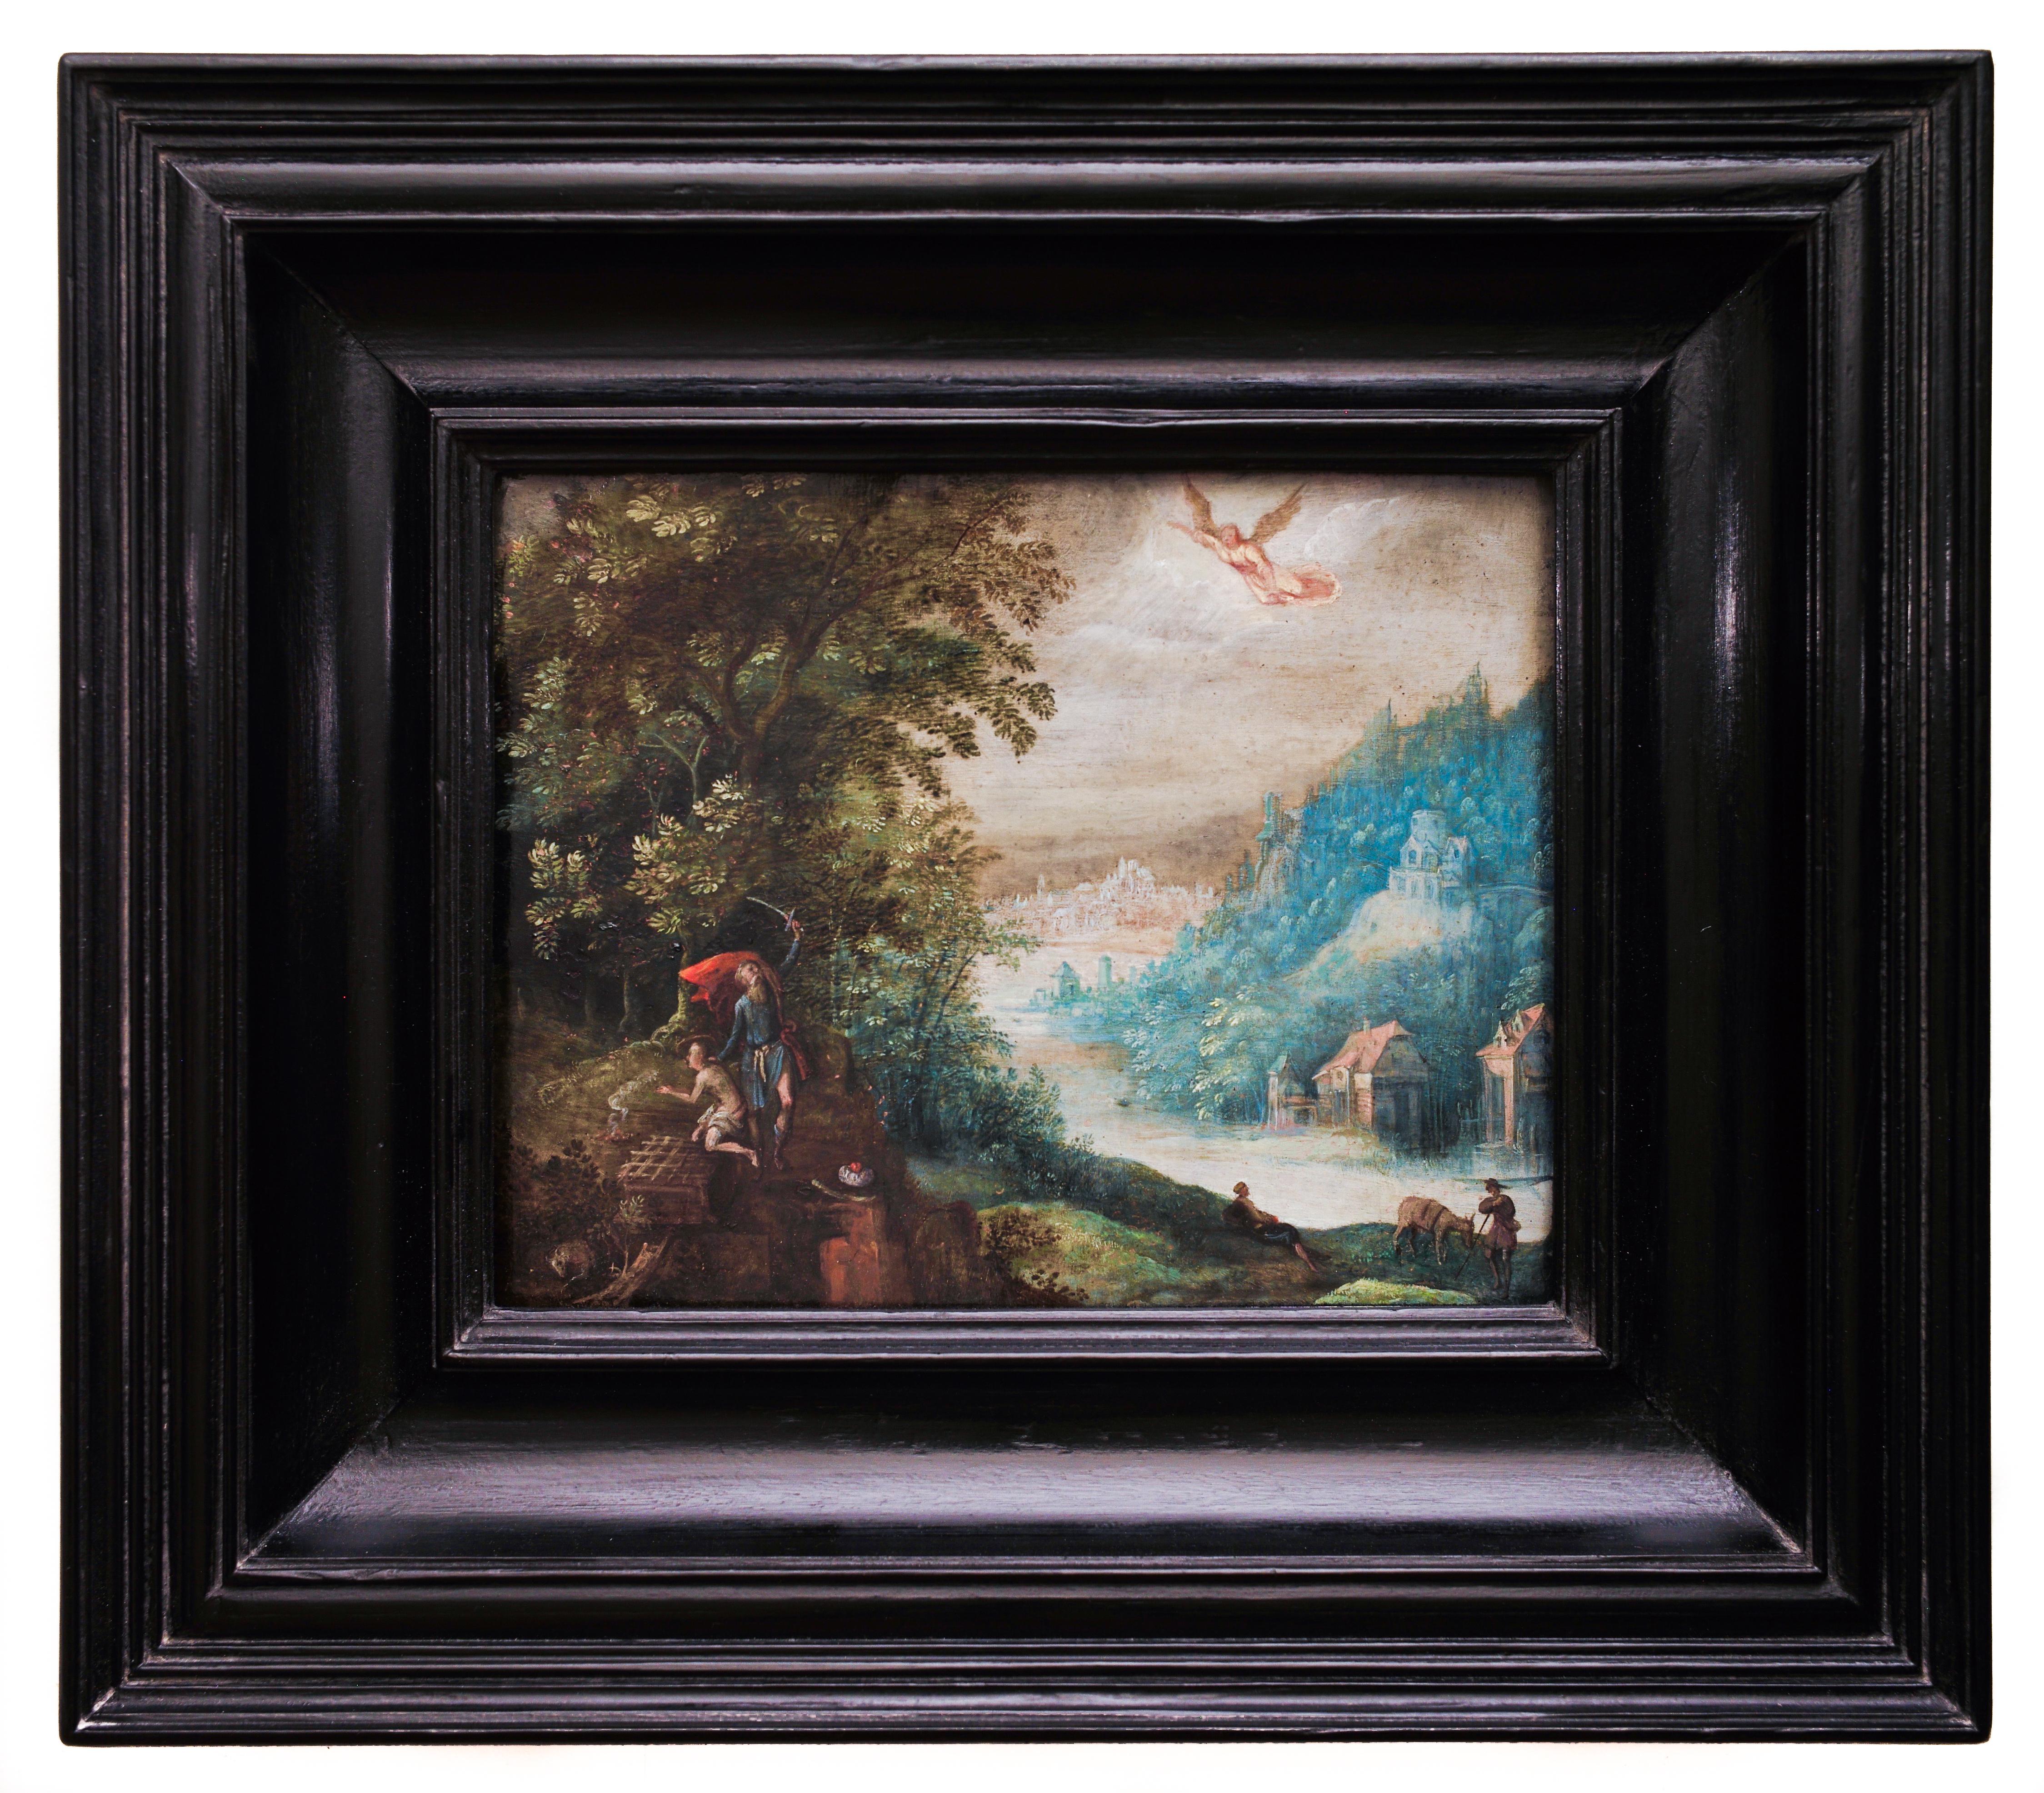 Adriaen van Stalbemt Landscape Painting - Abraham and the Sacrifice of His Son Isaac by Adriaen Van Stalbemt, C. 1605-1610